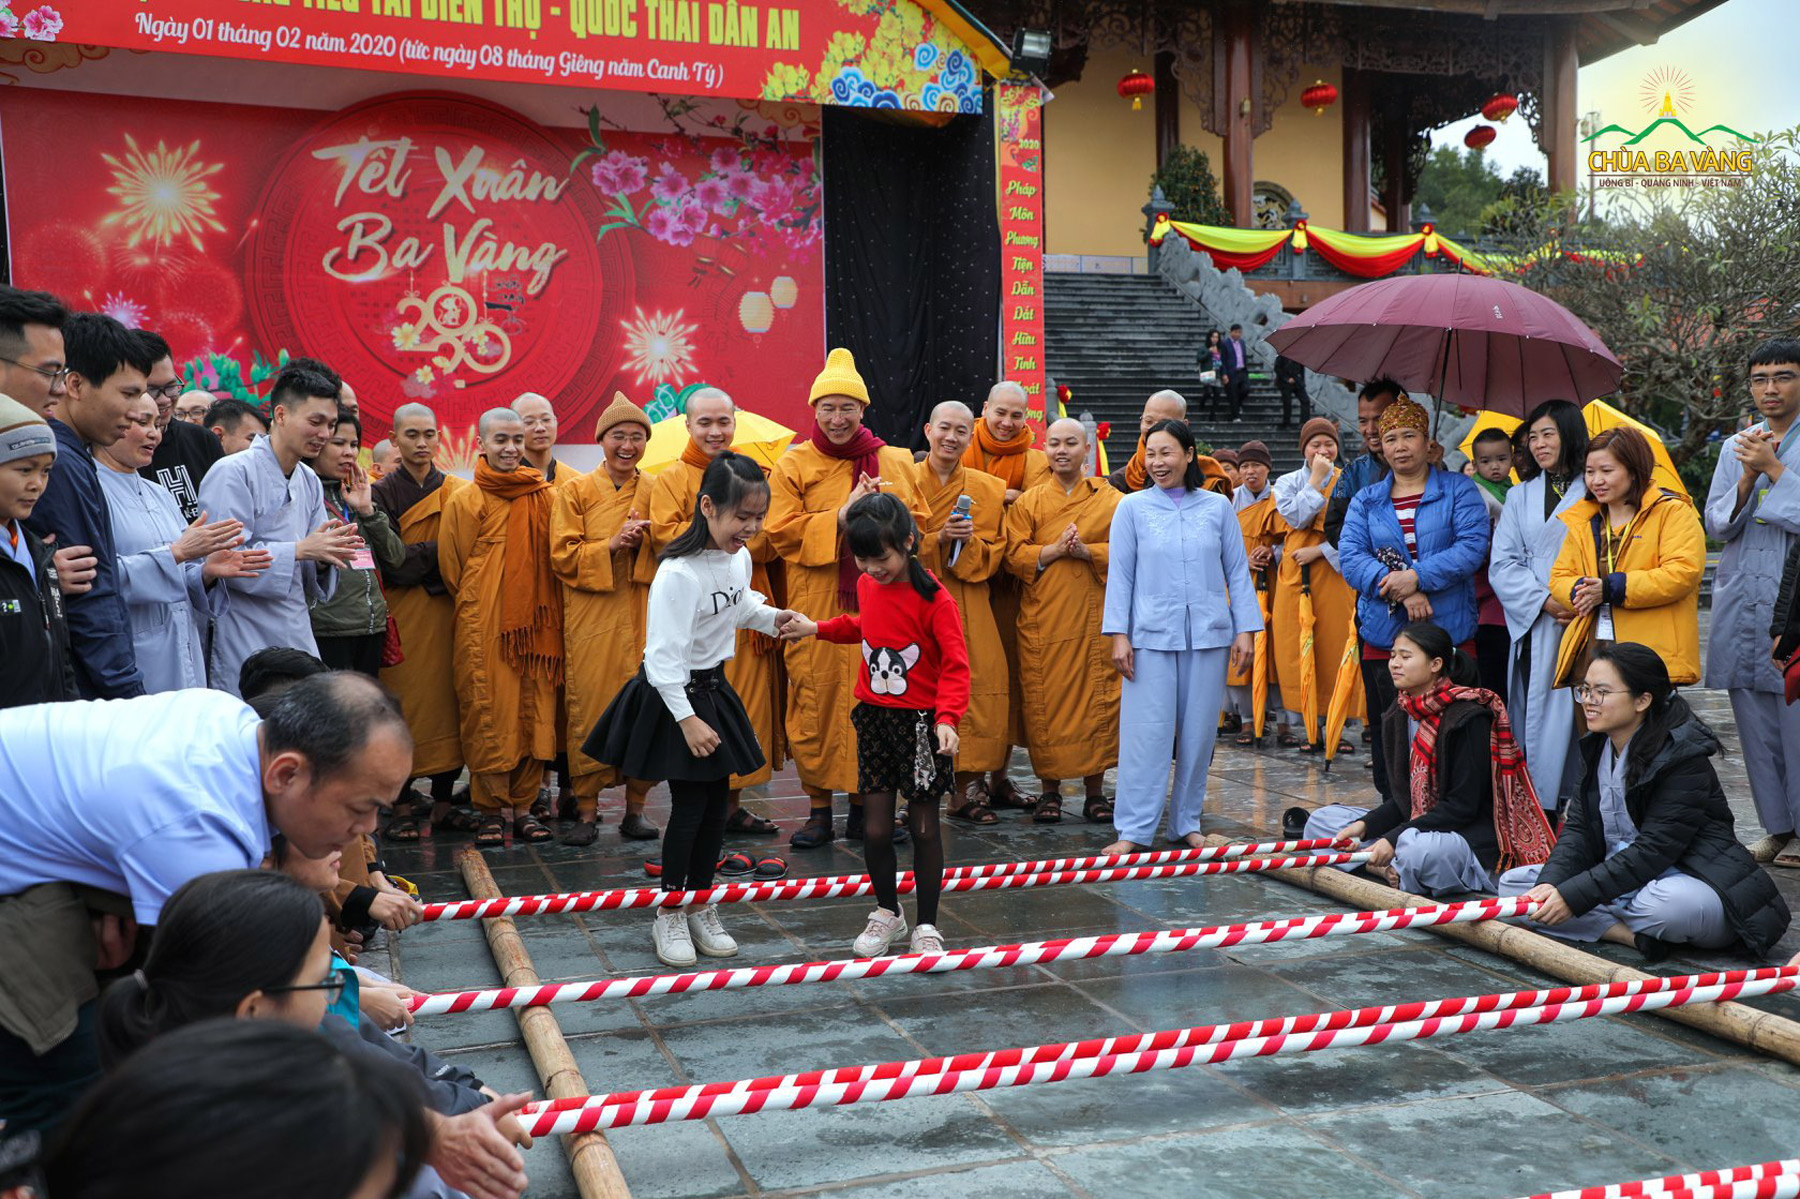 Các em nhỏ trải nghiệm trò nhảy sạp – một trò chơi truyền thống vùng cao trong không khí vui Tết rộn ràng tại chùa Ba Vàng (ảnh Xuân Canh Tý năm 2020)